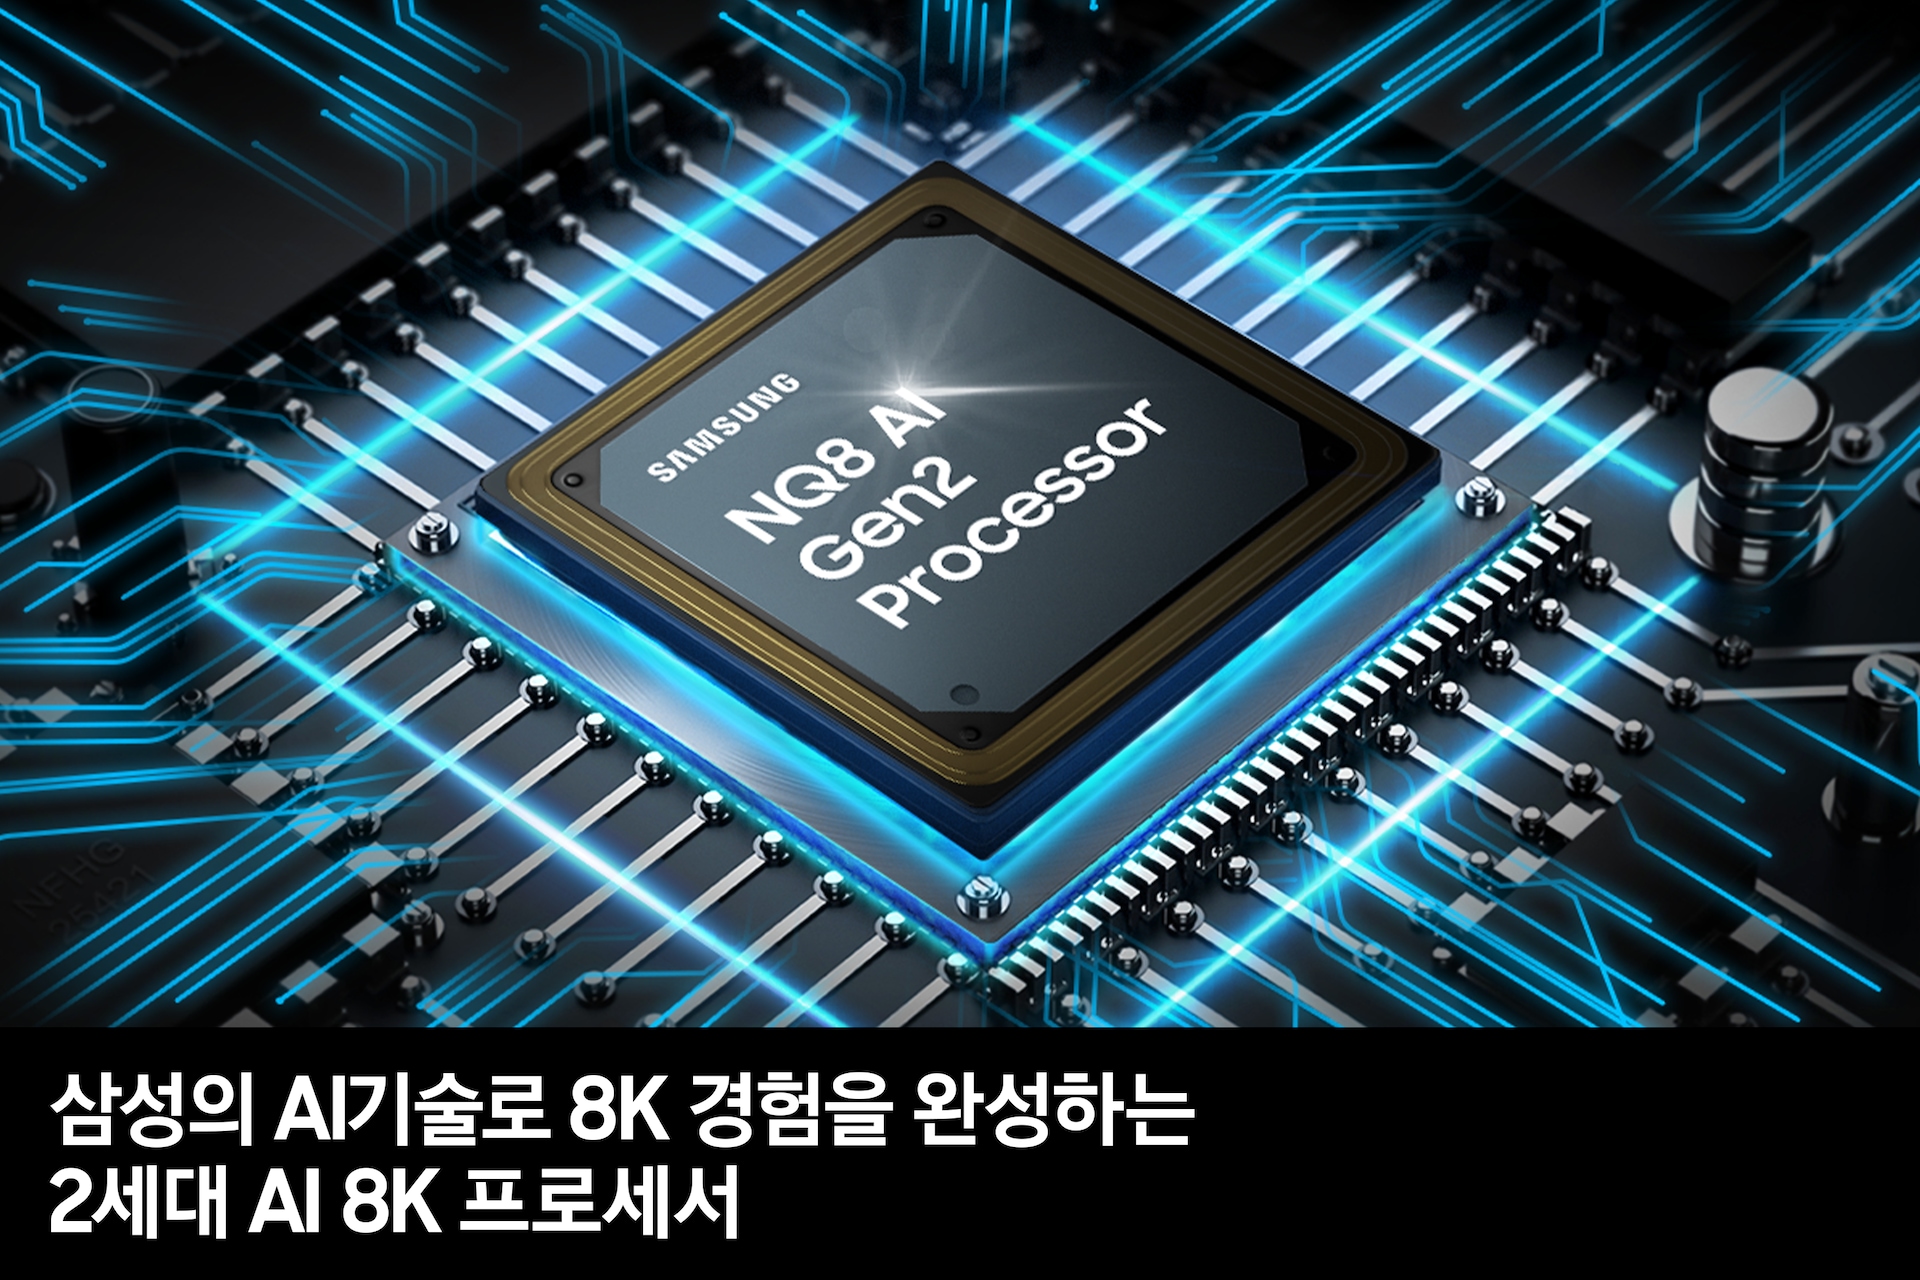 2세대 AI 8K 프로세서 칩이 보입니다. 삼성의 AI기술로 가장 진화한 8K 경험을 완성하는 2세대 AI 8K 프로세서 feature 컷입니다. 